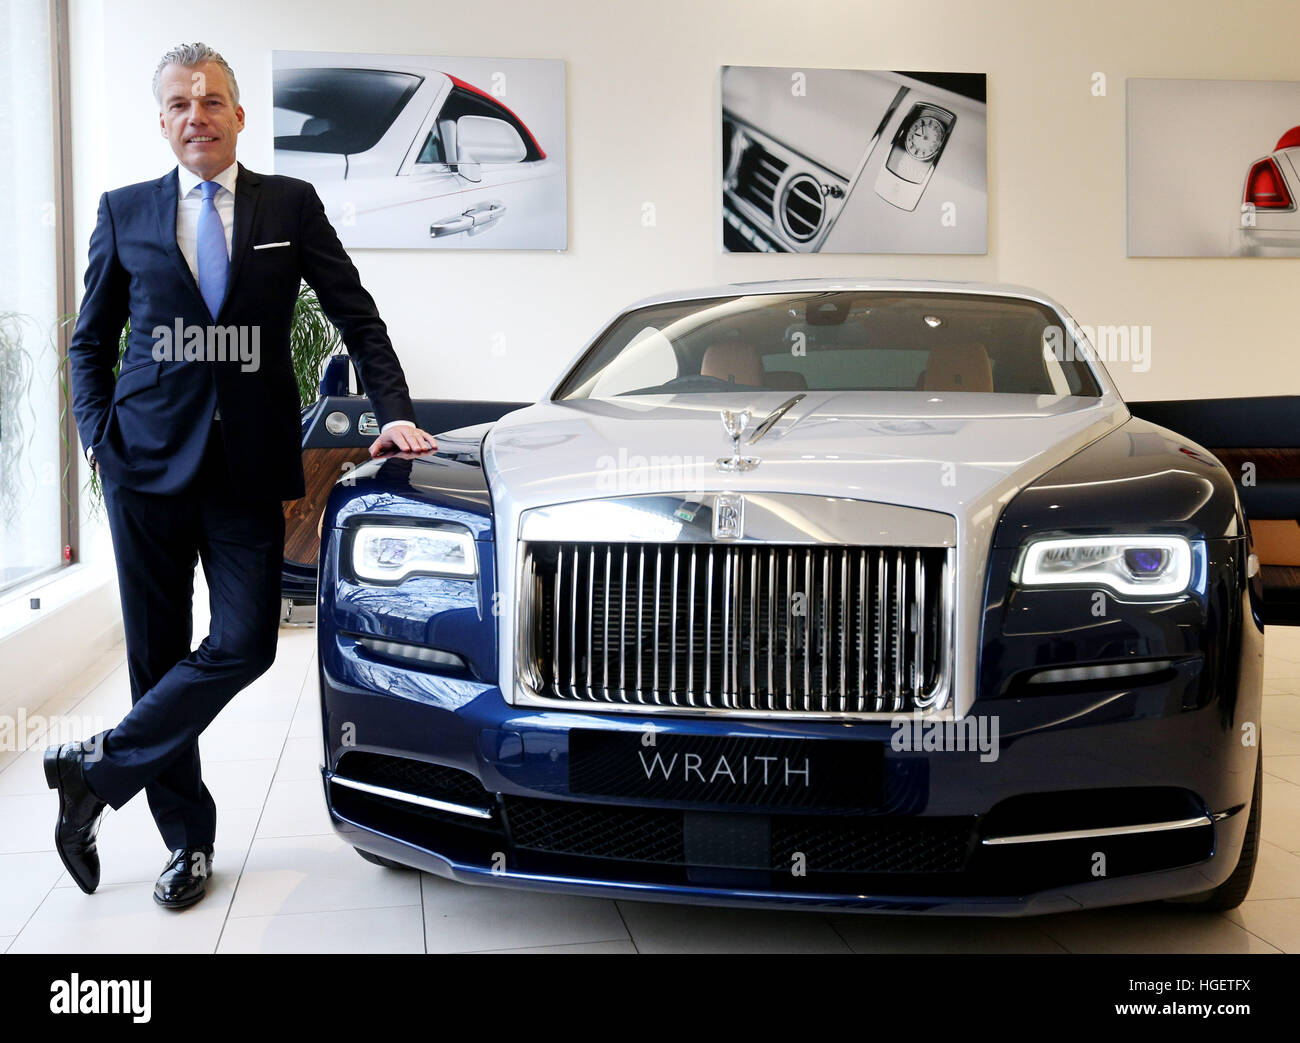 Rolls-Royce Motor Cars directeur Torsten Muller-Otvos avec une Rolls-Royce  Wraith au Berkeley Square showroom à Londres, comme la société a renouvelé  son engagement à la Grande-Bretagne après un saut à deux chiffres